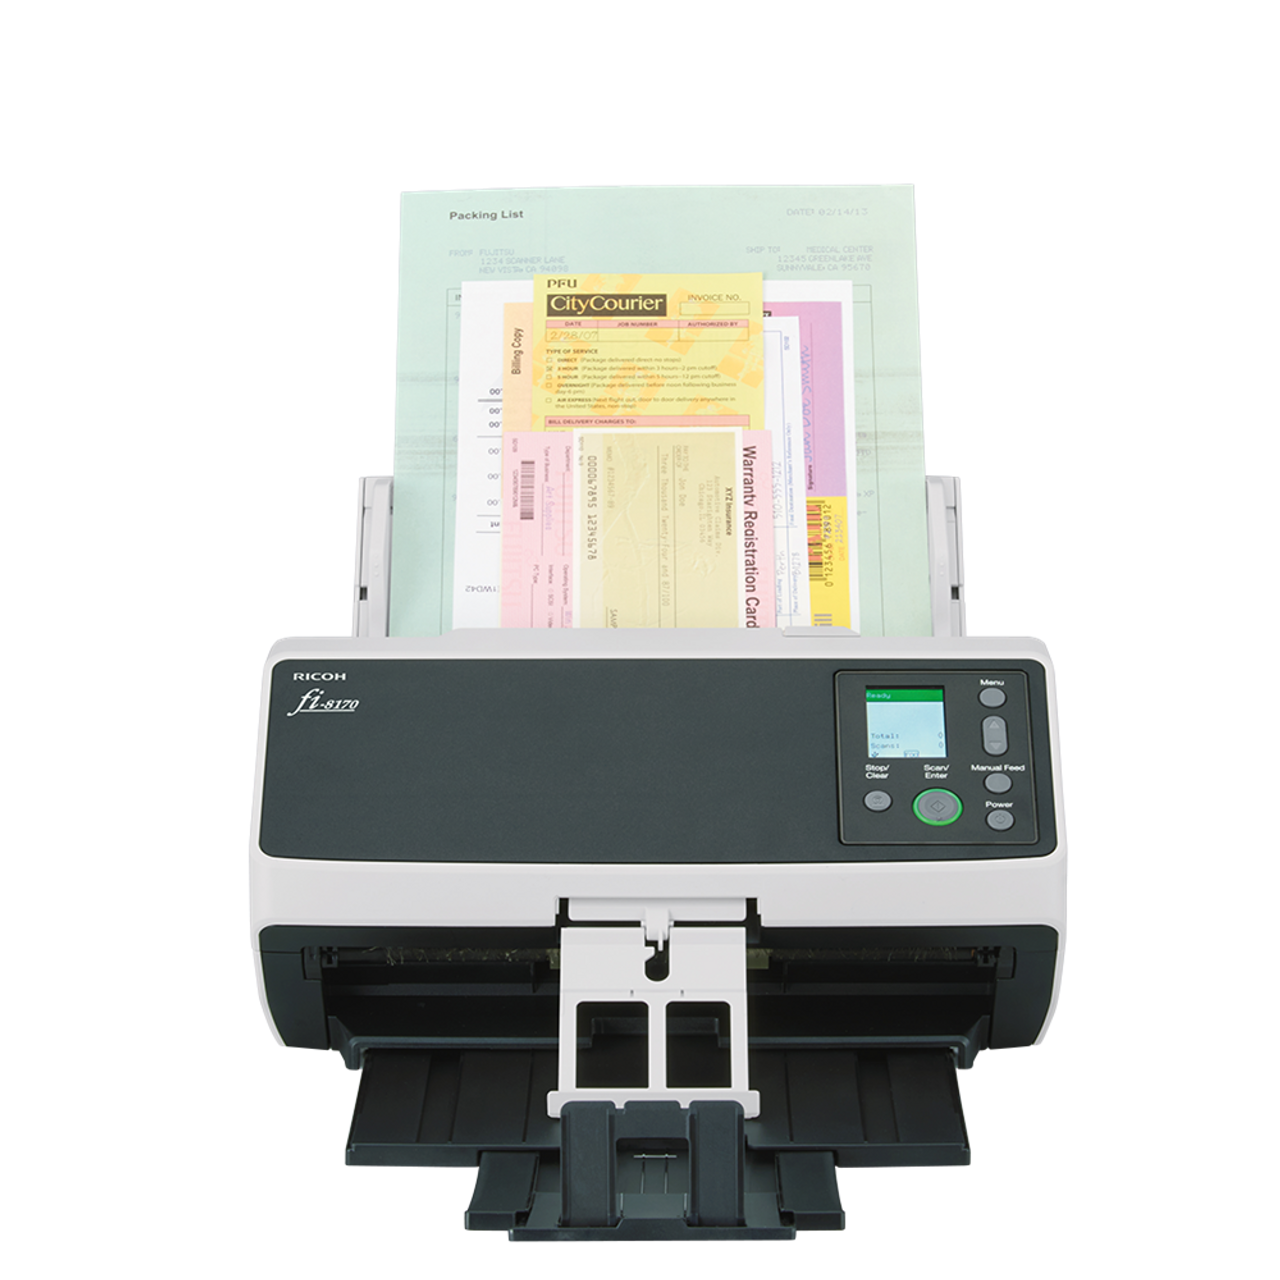 Fujitsu SP-1130Ne Scanner de documents duplex couleur facile à utiliser  avec distributeur automatique de documents (ADF) et Twain Driver :  : Informatique